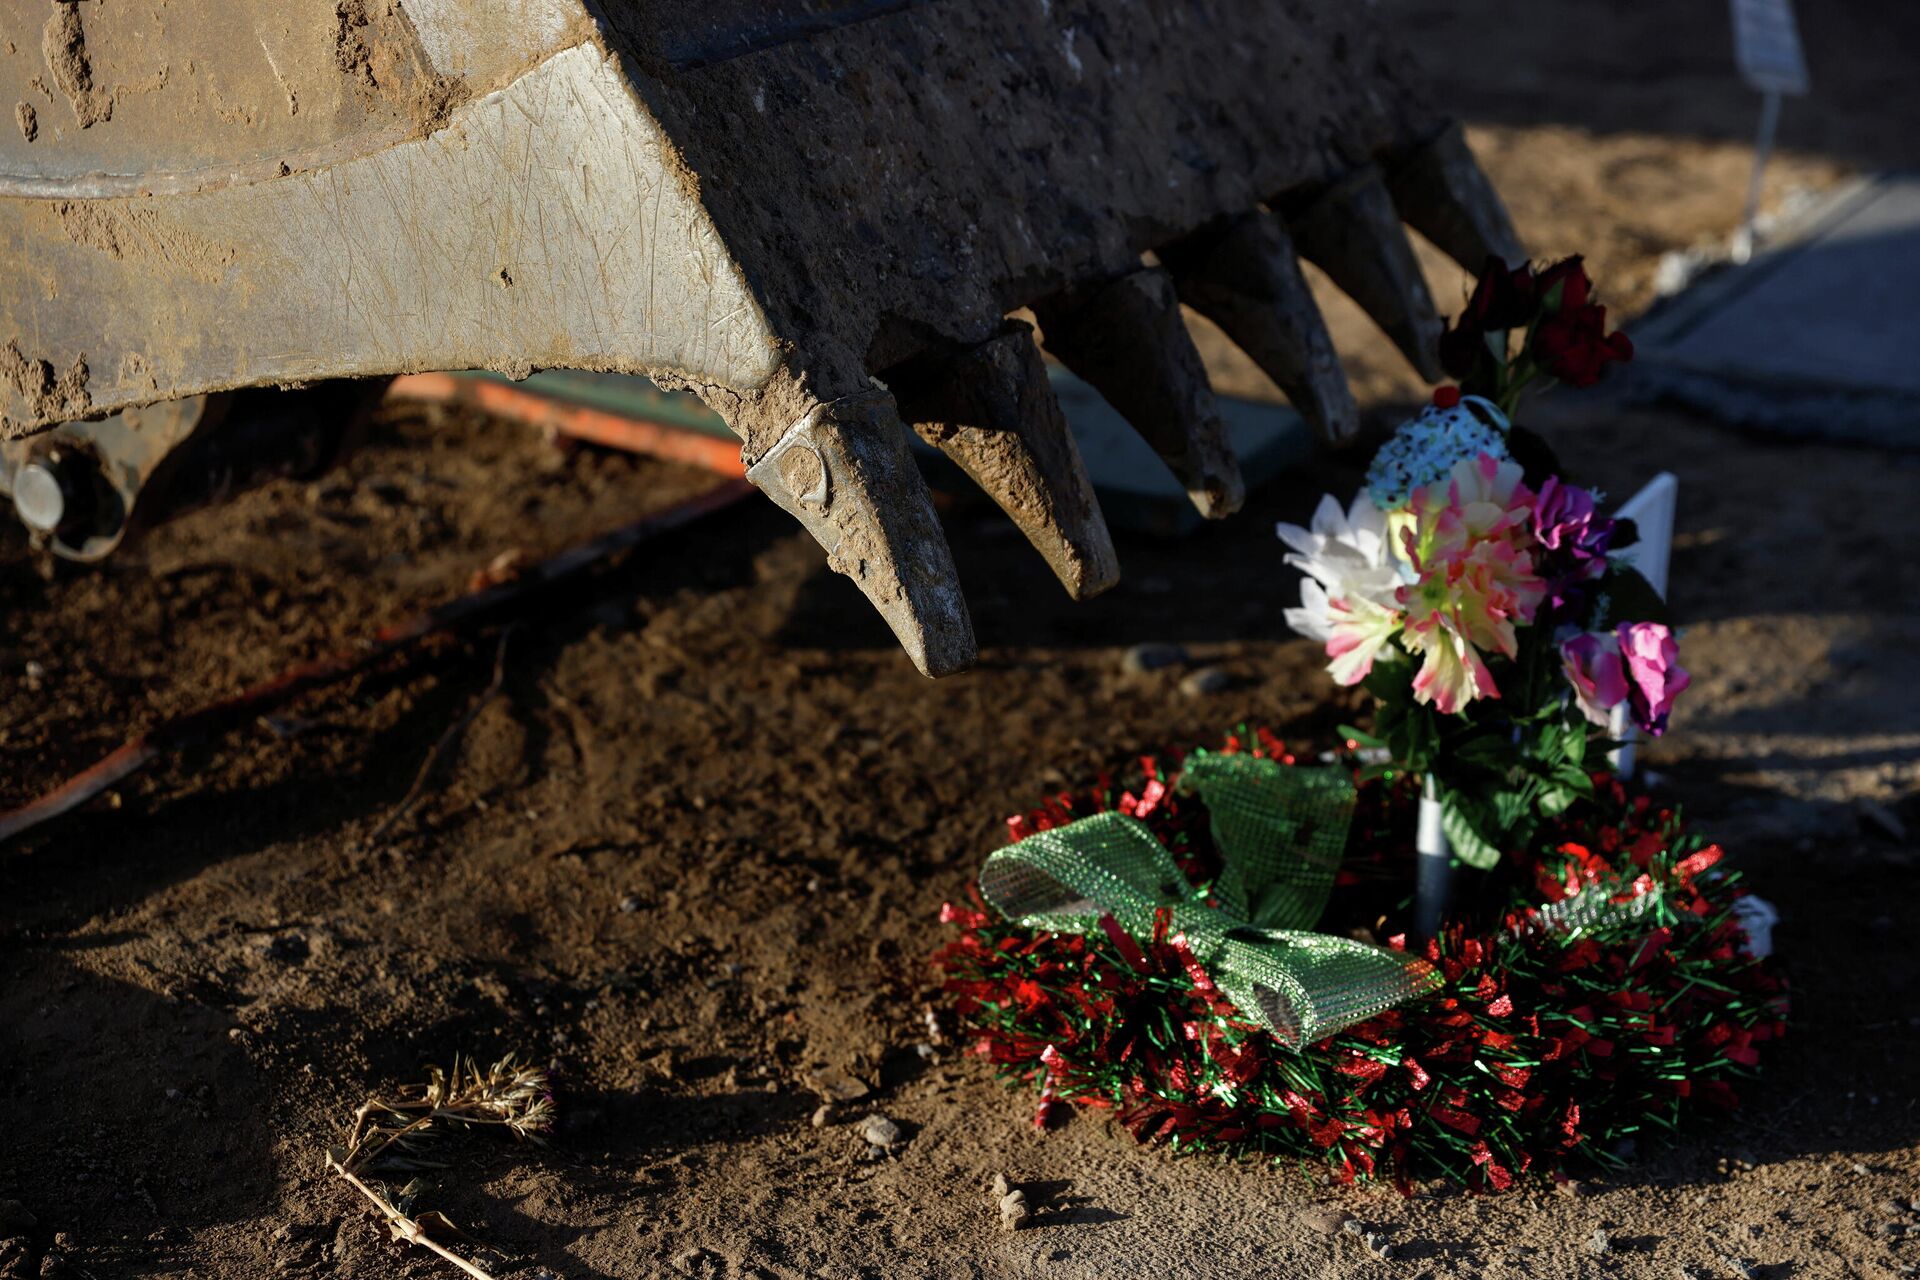 Condado rural no estado do Novo México, EUA, onde as mortes por COVID-19 estão se tornando normais pela quantidade de casos. Na foto, uma retroescavadeira é utilizada para cavar sepulturas no cemitério Kirtland Fruitland, em Kirland, 15 de dezembro de 2021 - Sputnik Brasil, 1920, 04.01.2022